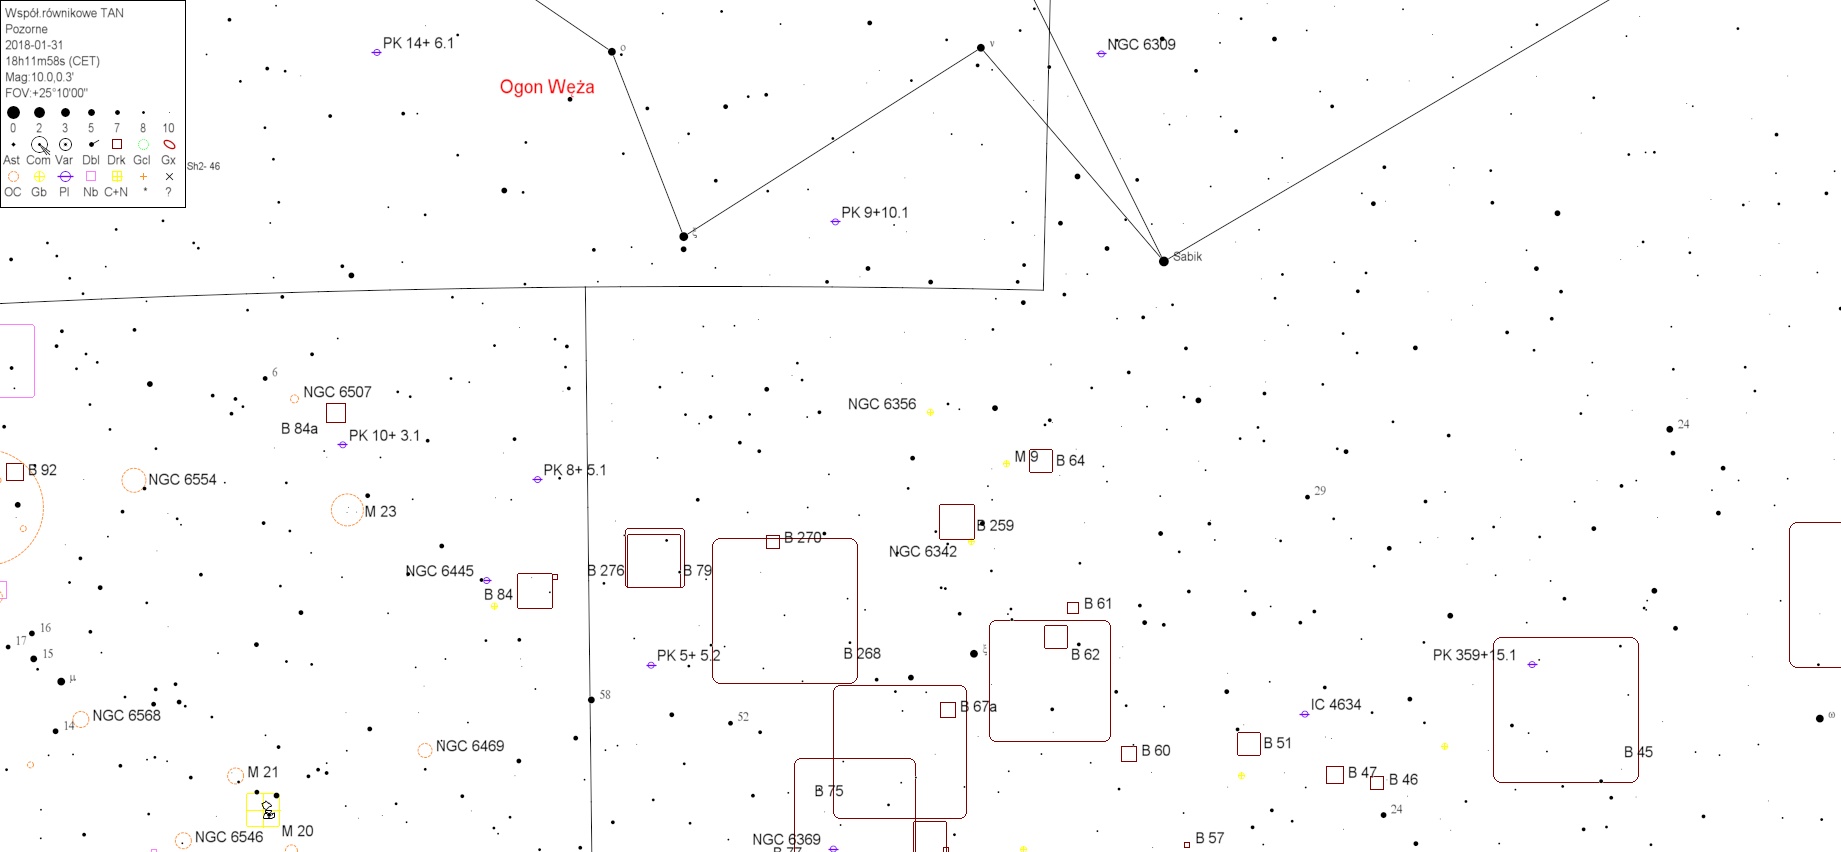 NGC6356v4.jpg